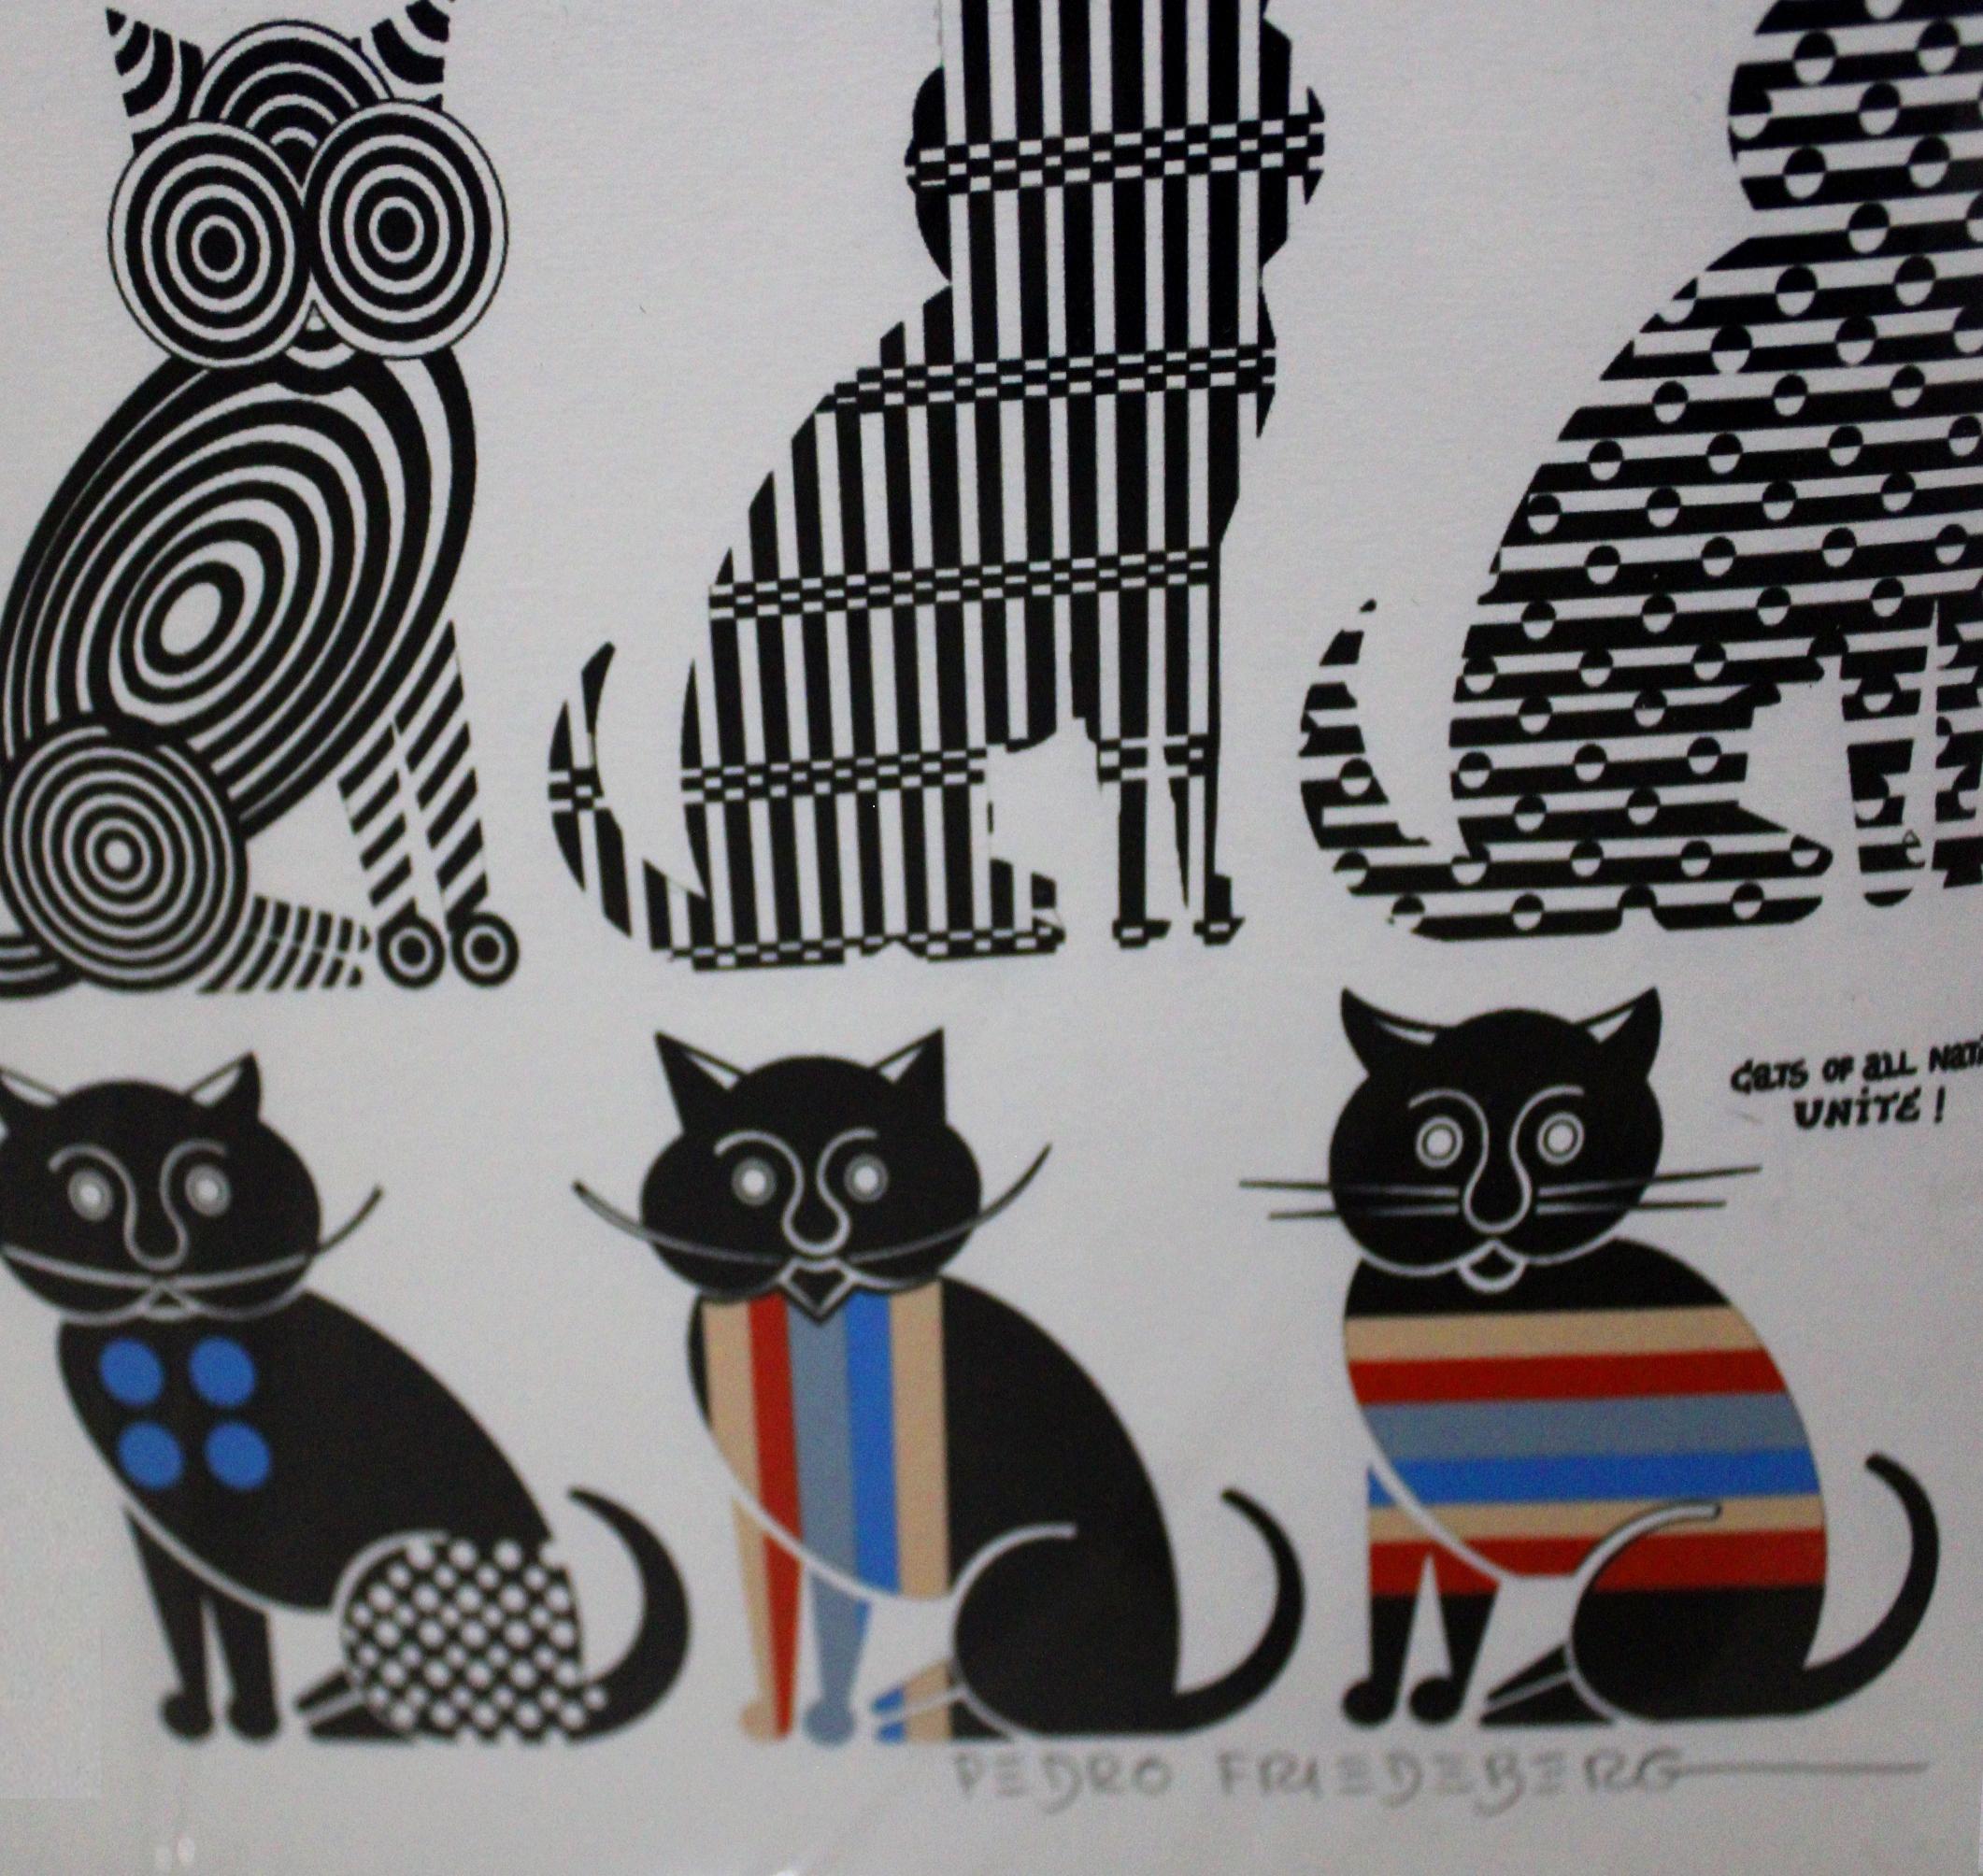 Katzen aller Nationen vereinigt euch! – Print von Pedro Friedeberg